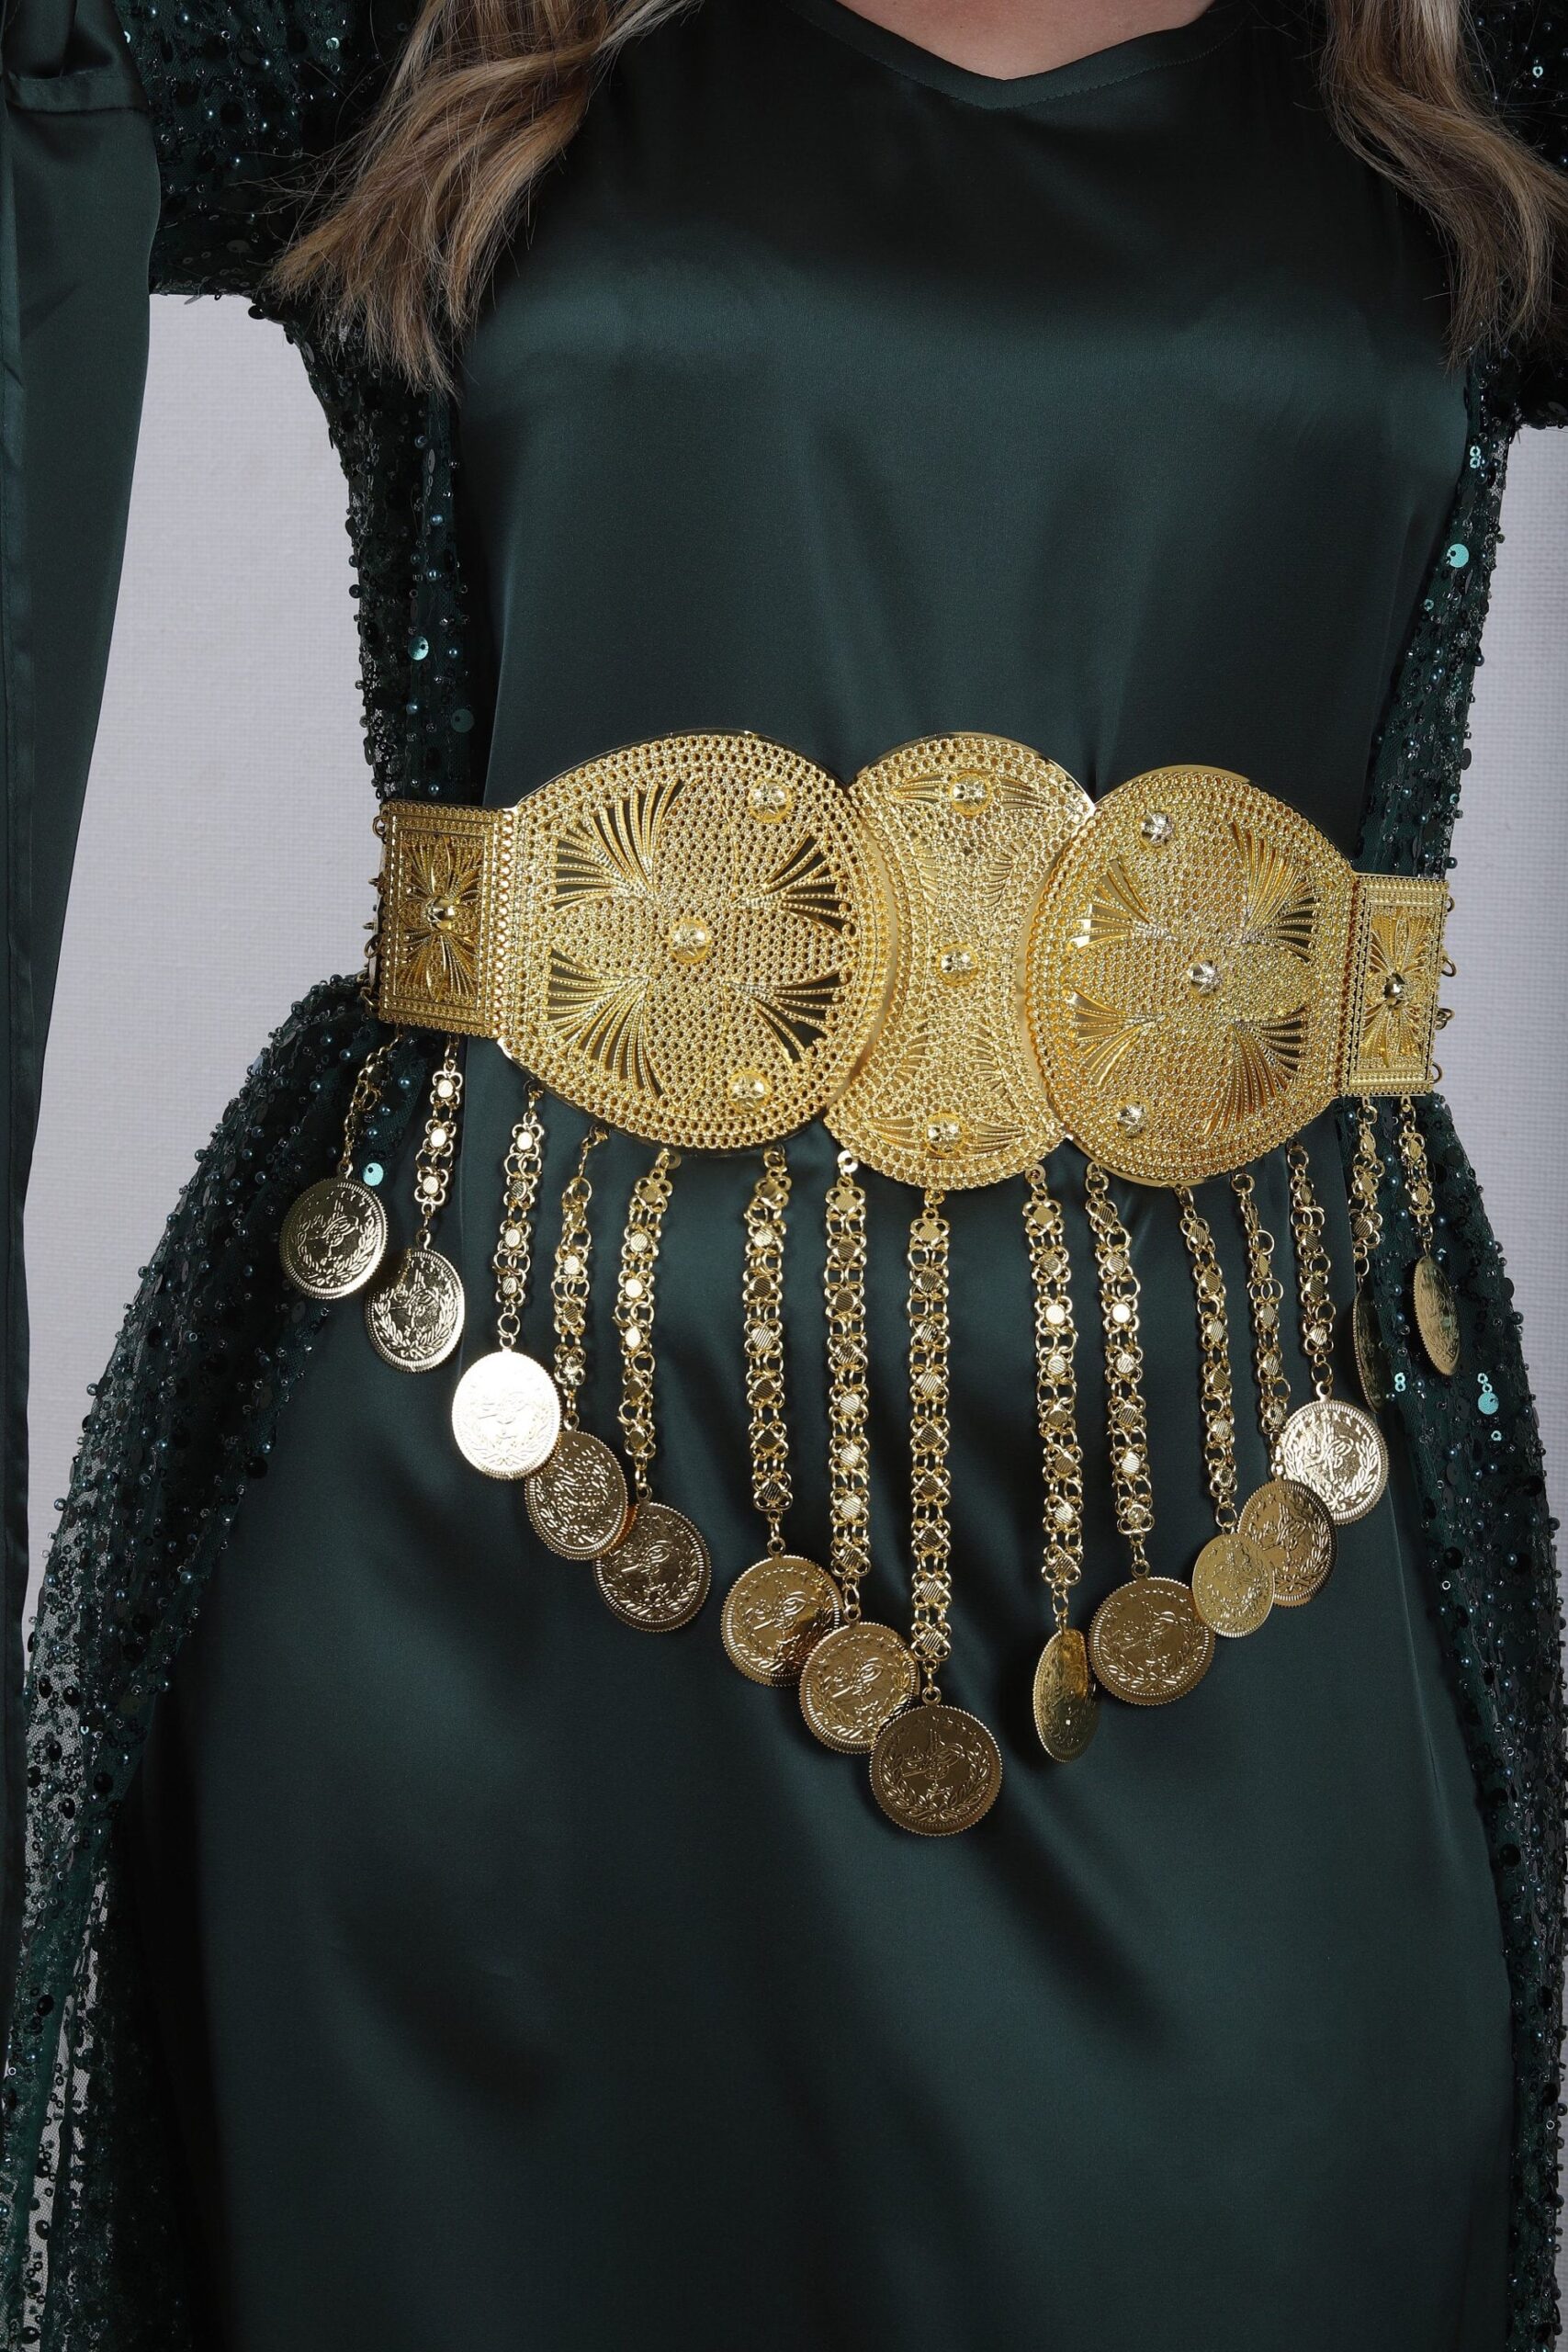 Gold Waist Belt Outfit Ideas